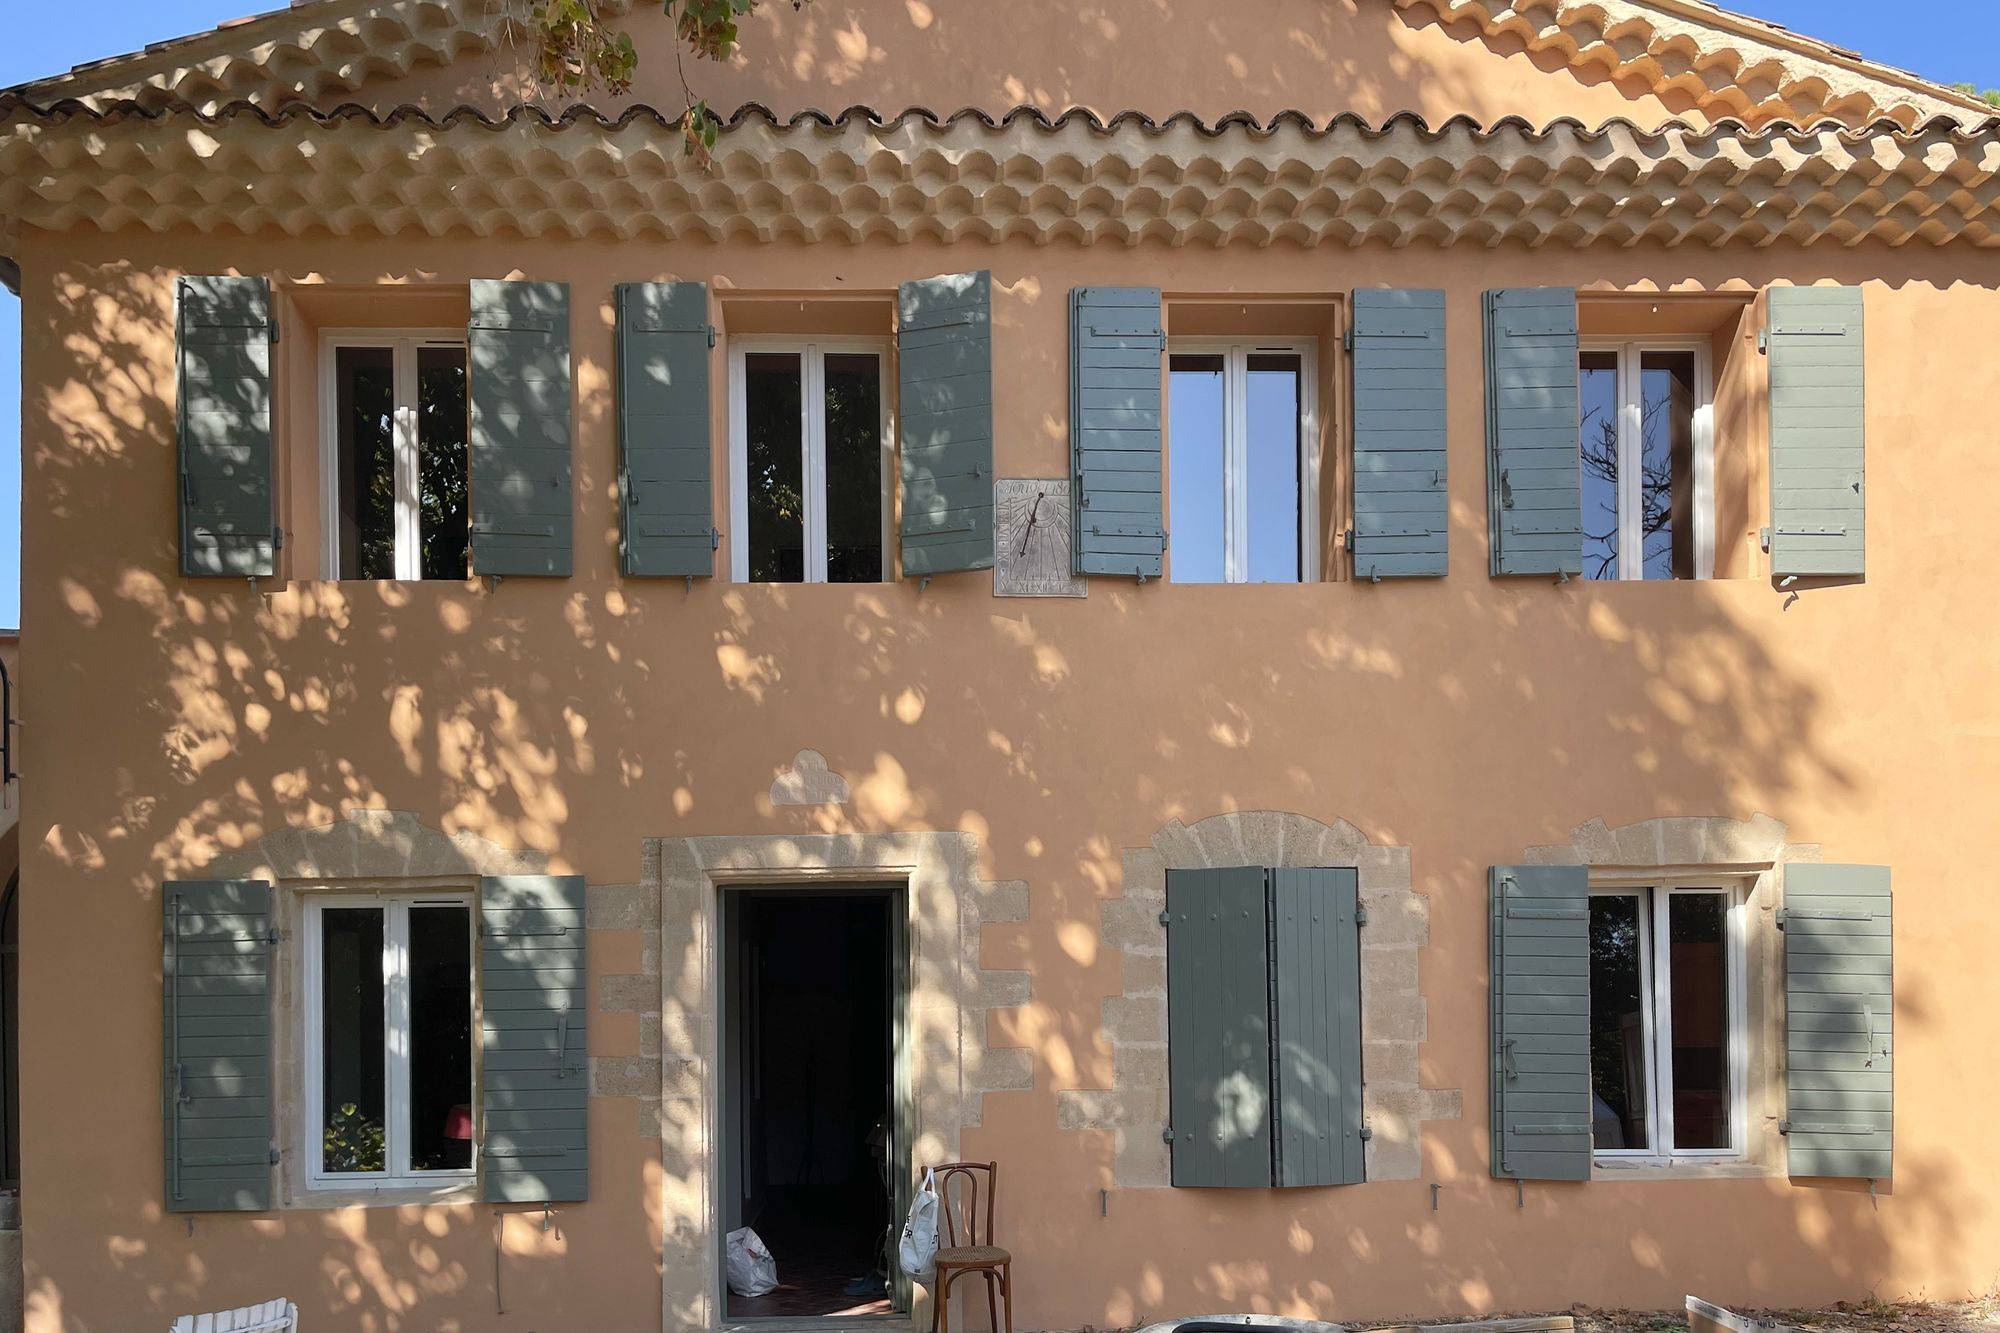 Réhabilitation / Ravalement de façades en enduits chaux d'une ancienne bastide provençale à Aix-en-Provence (13100)